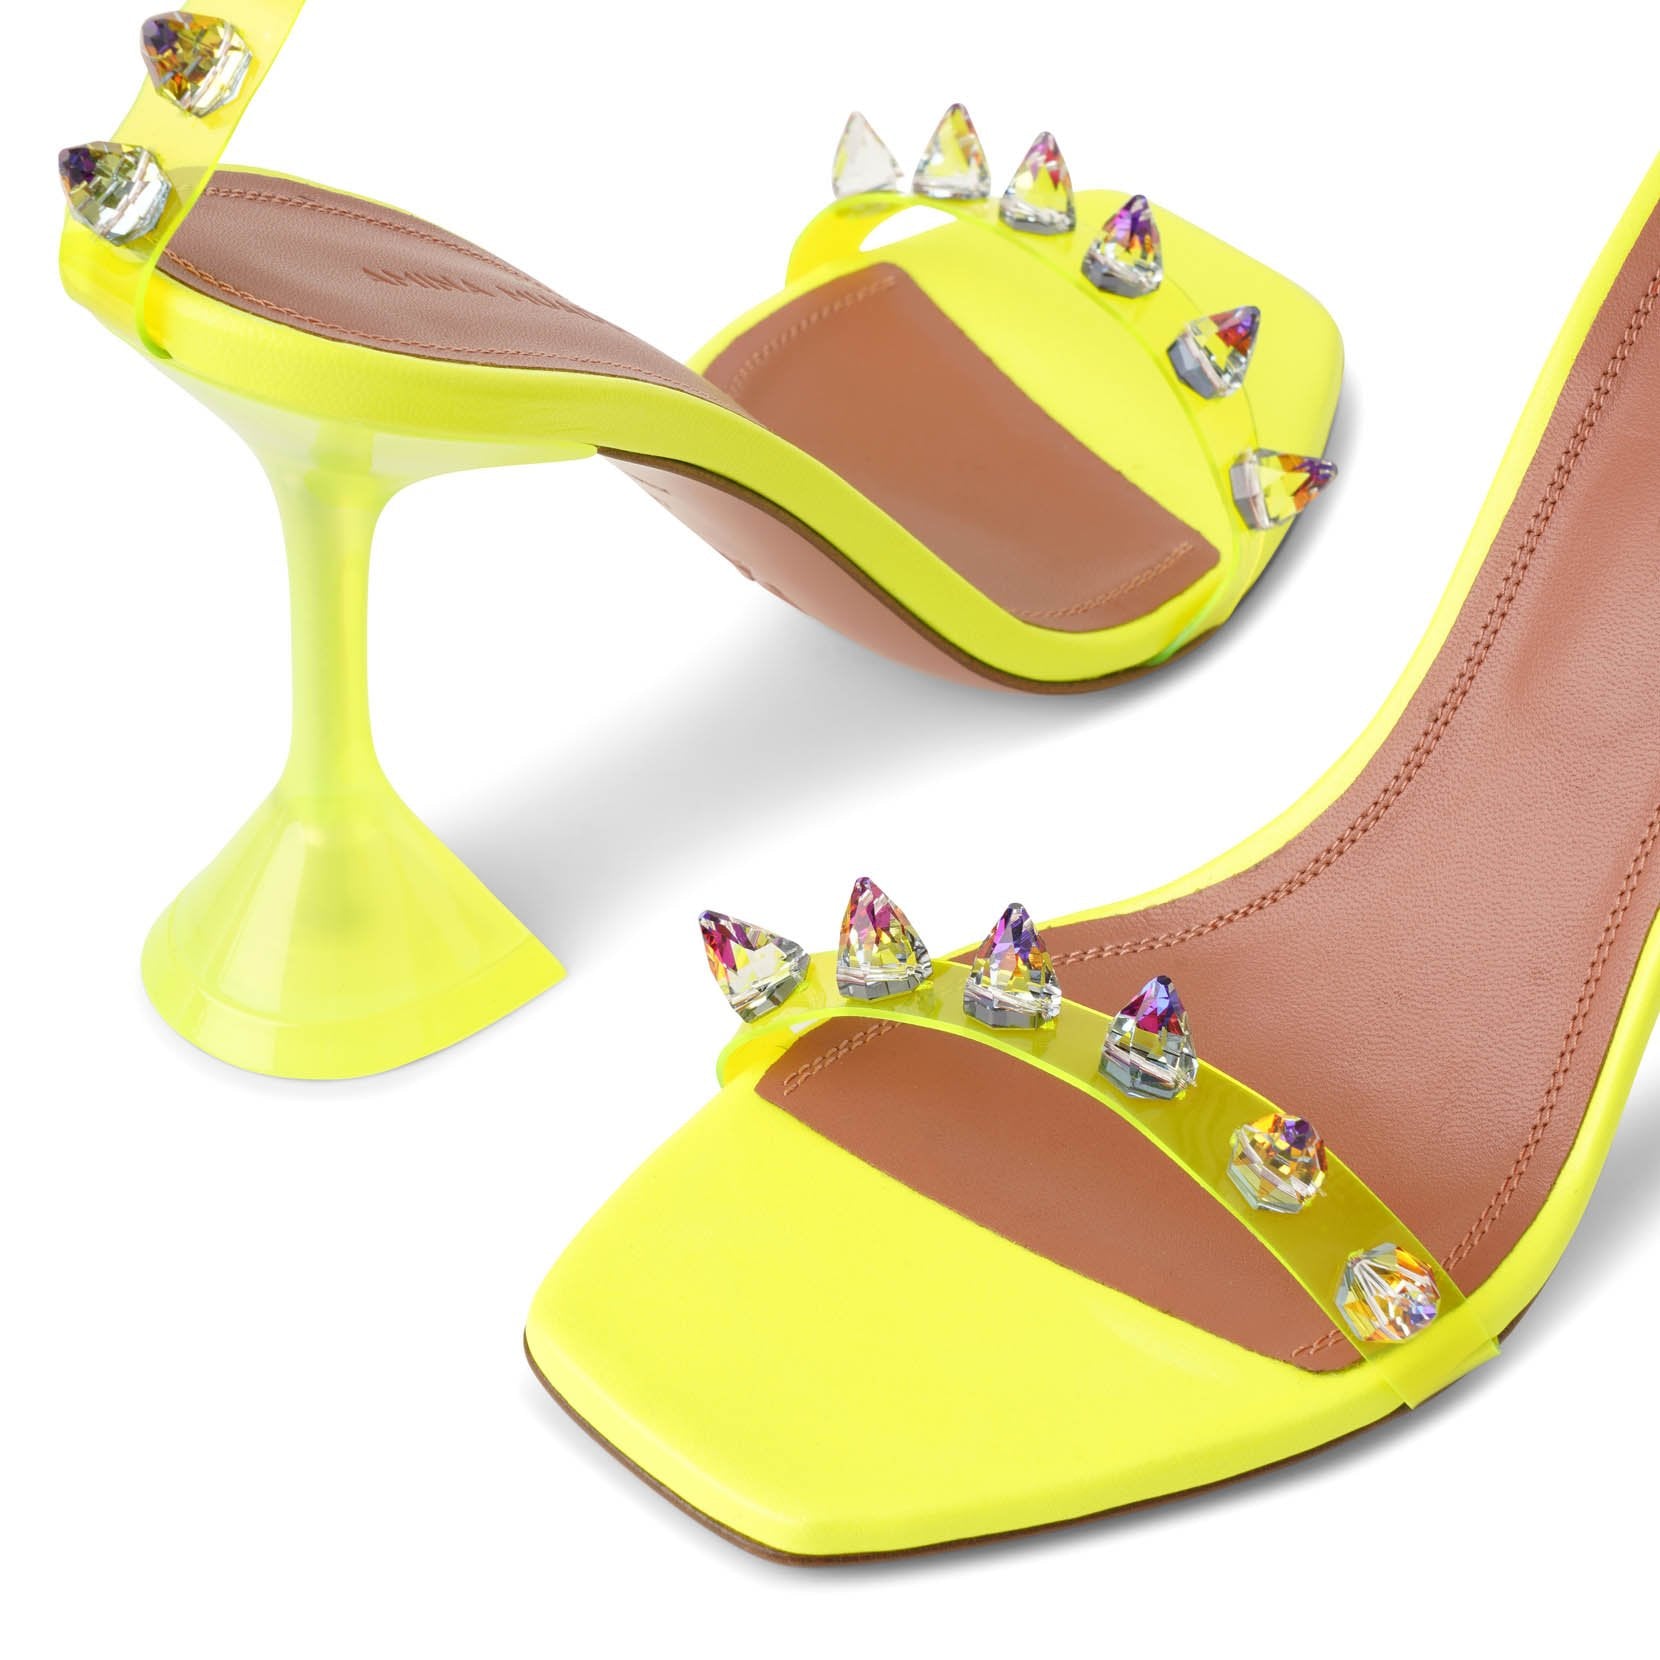 Julia embellished pvc sandals